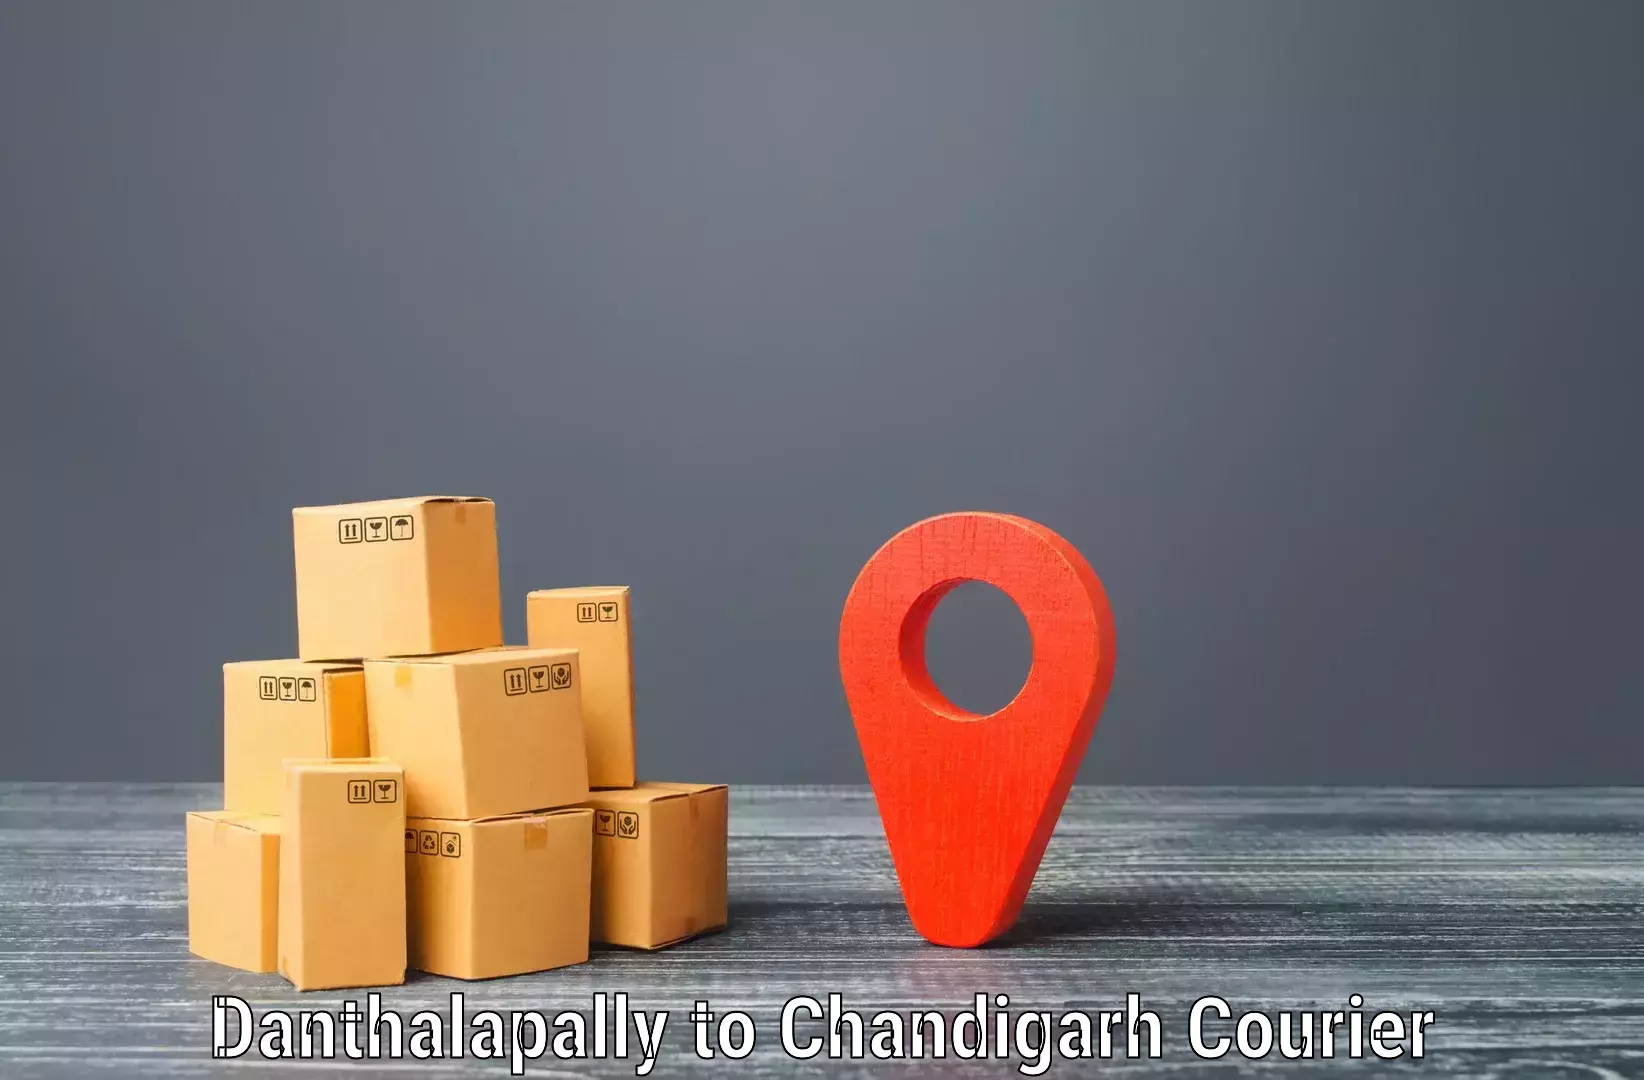 Door-to-door shipment Danthalapally to Chandigarh